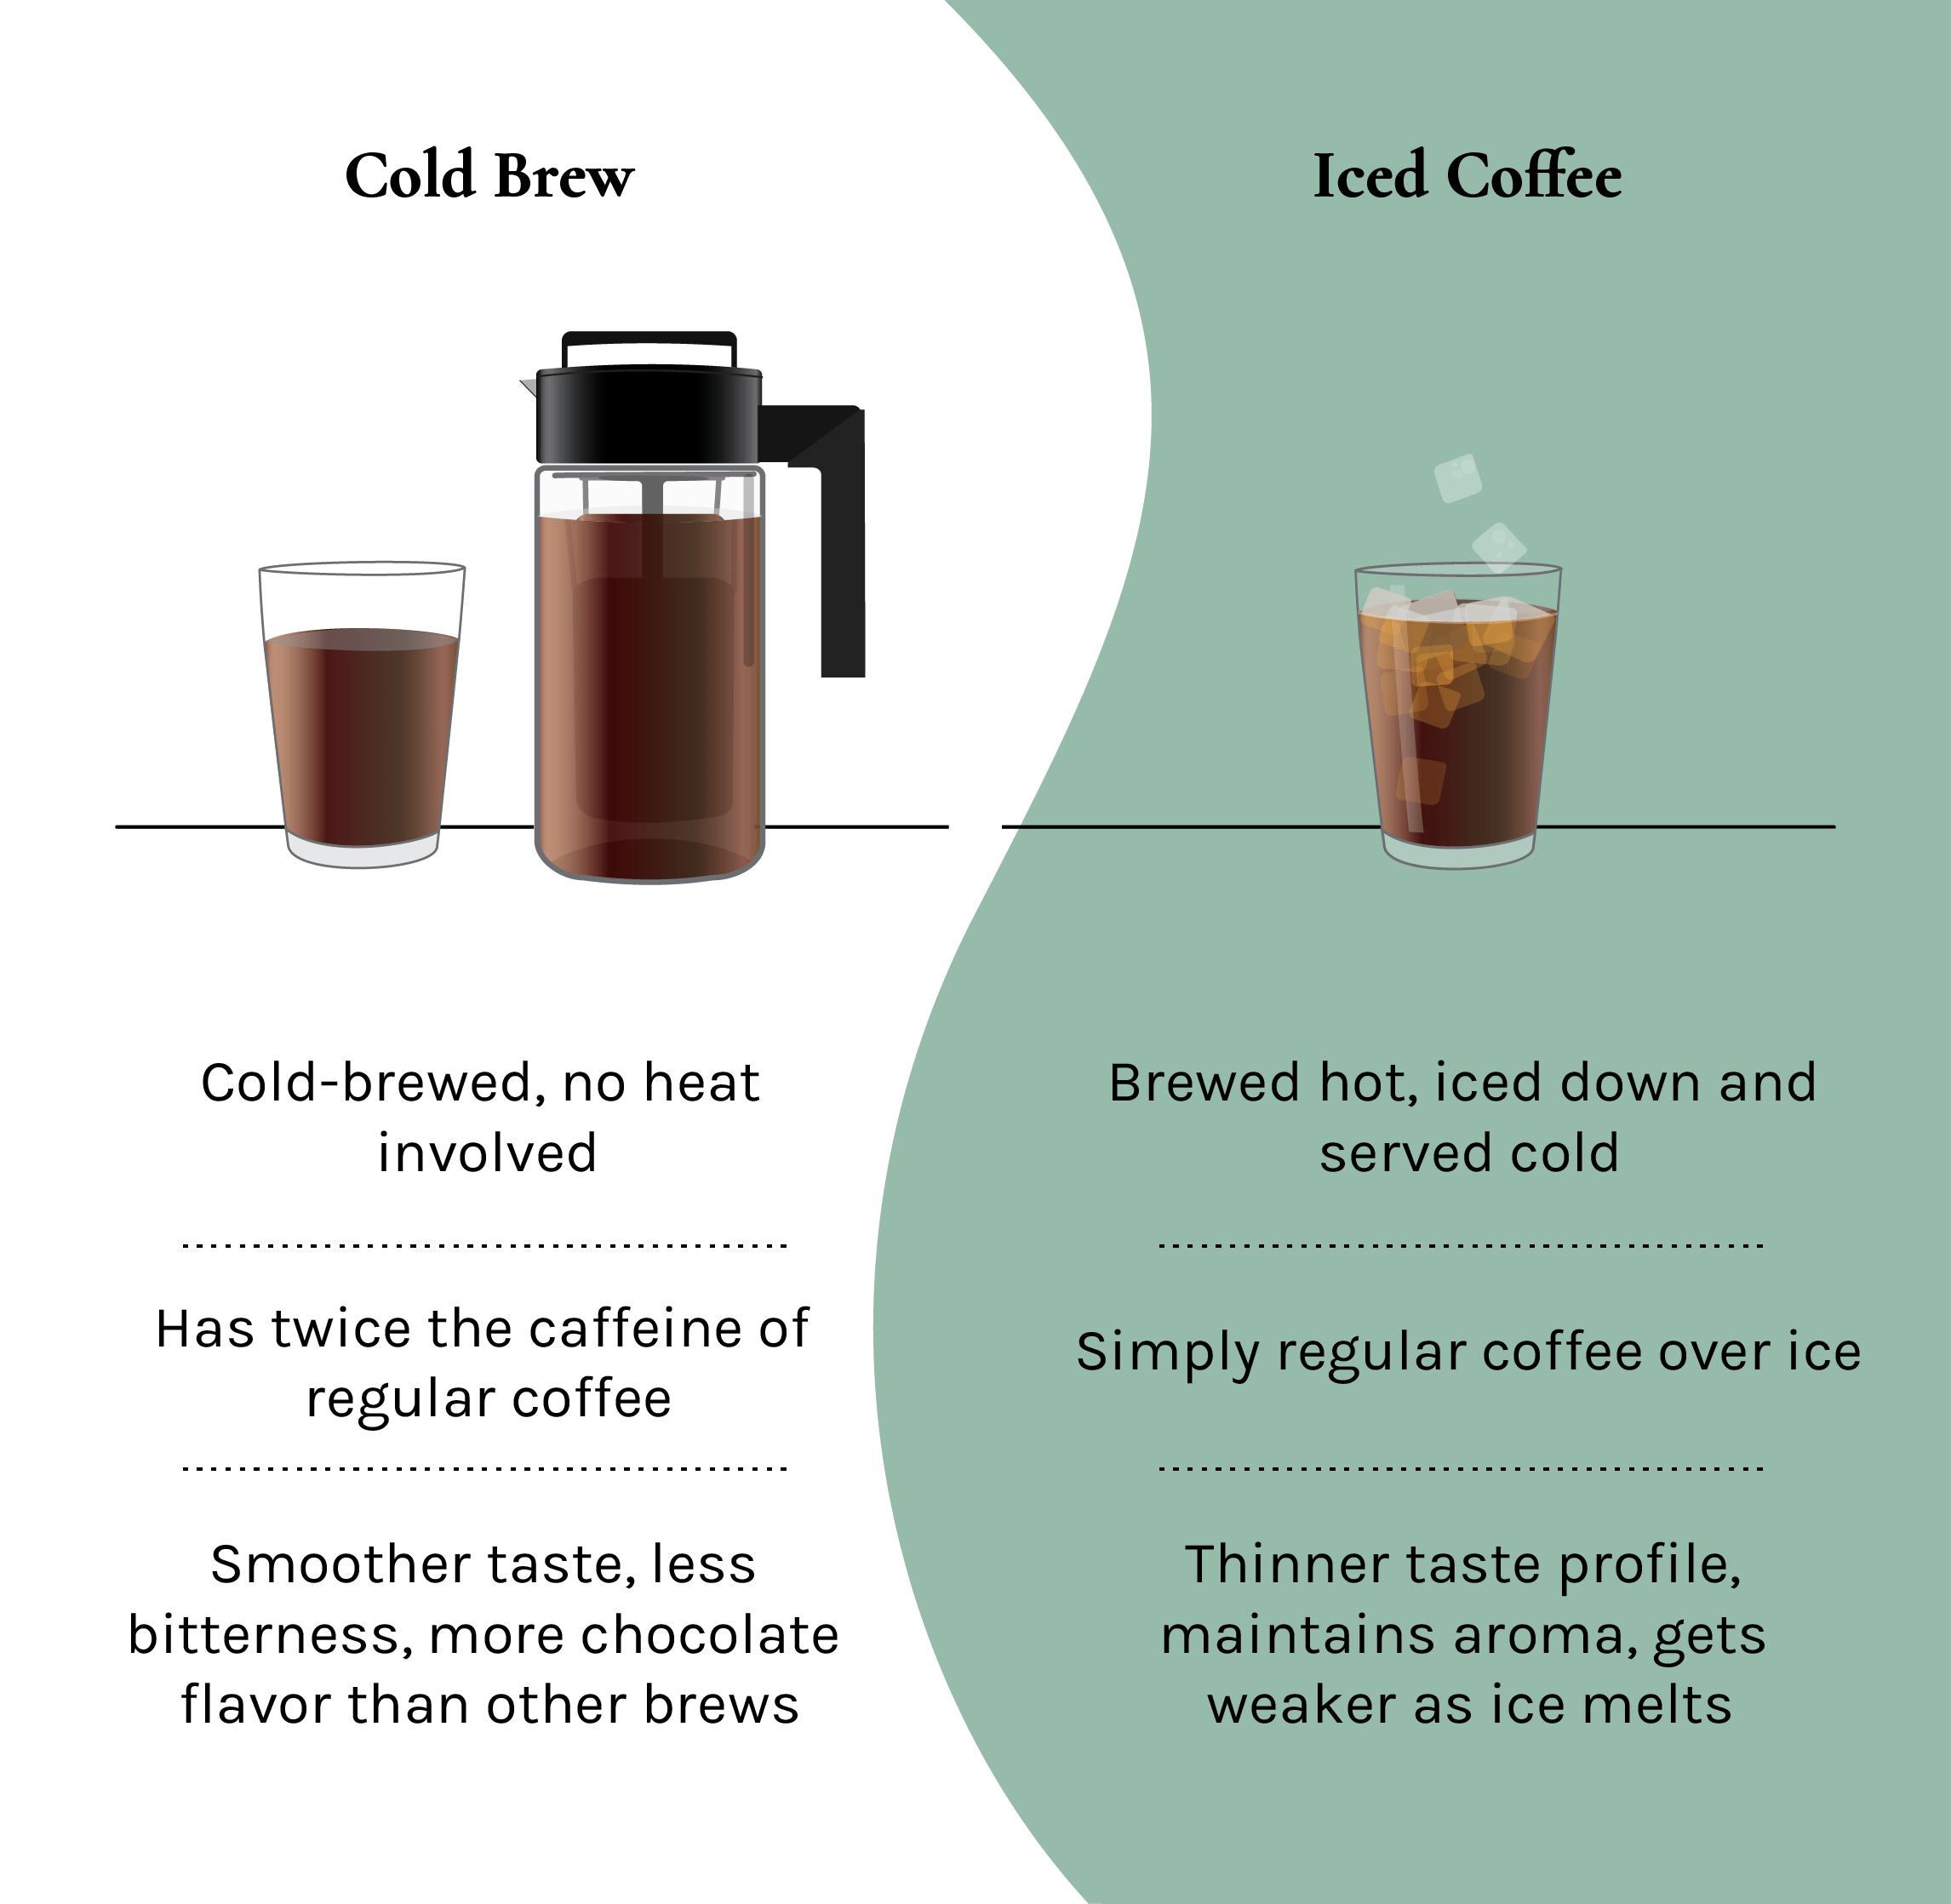 https://images.squarespace-cdn.com/content/v1/5f6f4fd5237e597553507778/144e040d-9cf4-4642-a684-e1071973527a/Cold+brew+vs+Iced+Coffee+Infographic.png